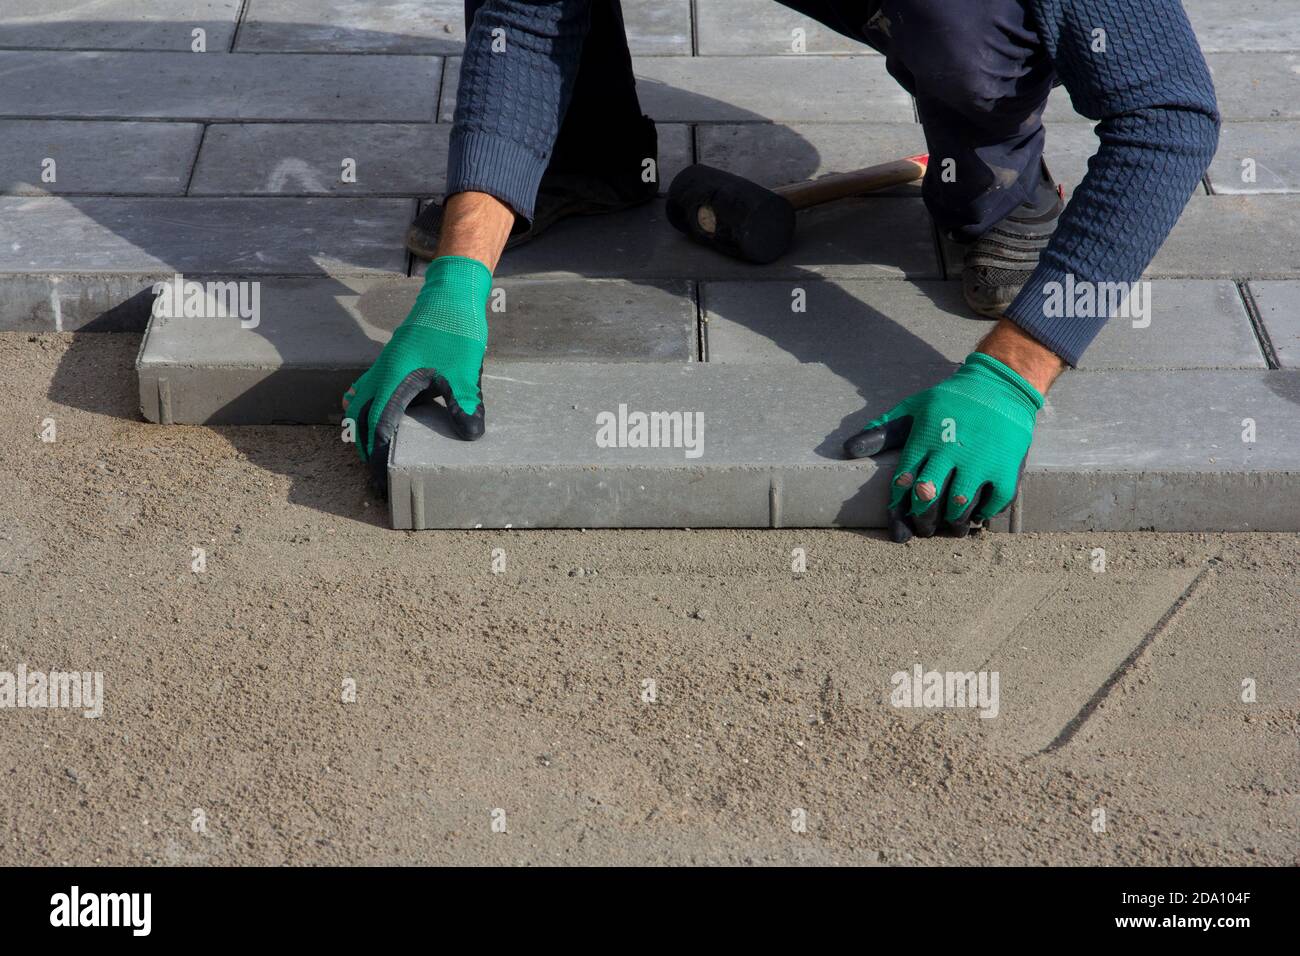 Finisseur sur briques en fonctionnement. Le travailleur pose des carreaux de pavage, construction de pavés de briques. Arrière-plan de l'architecture Banque D'Images